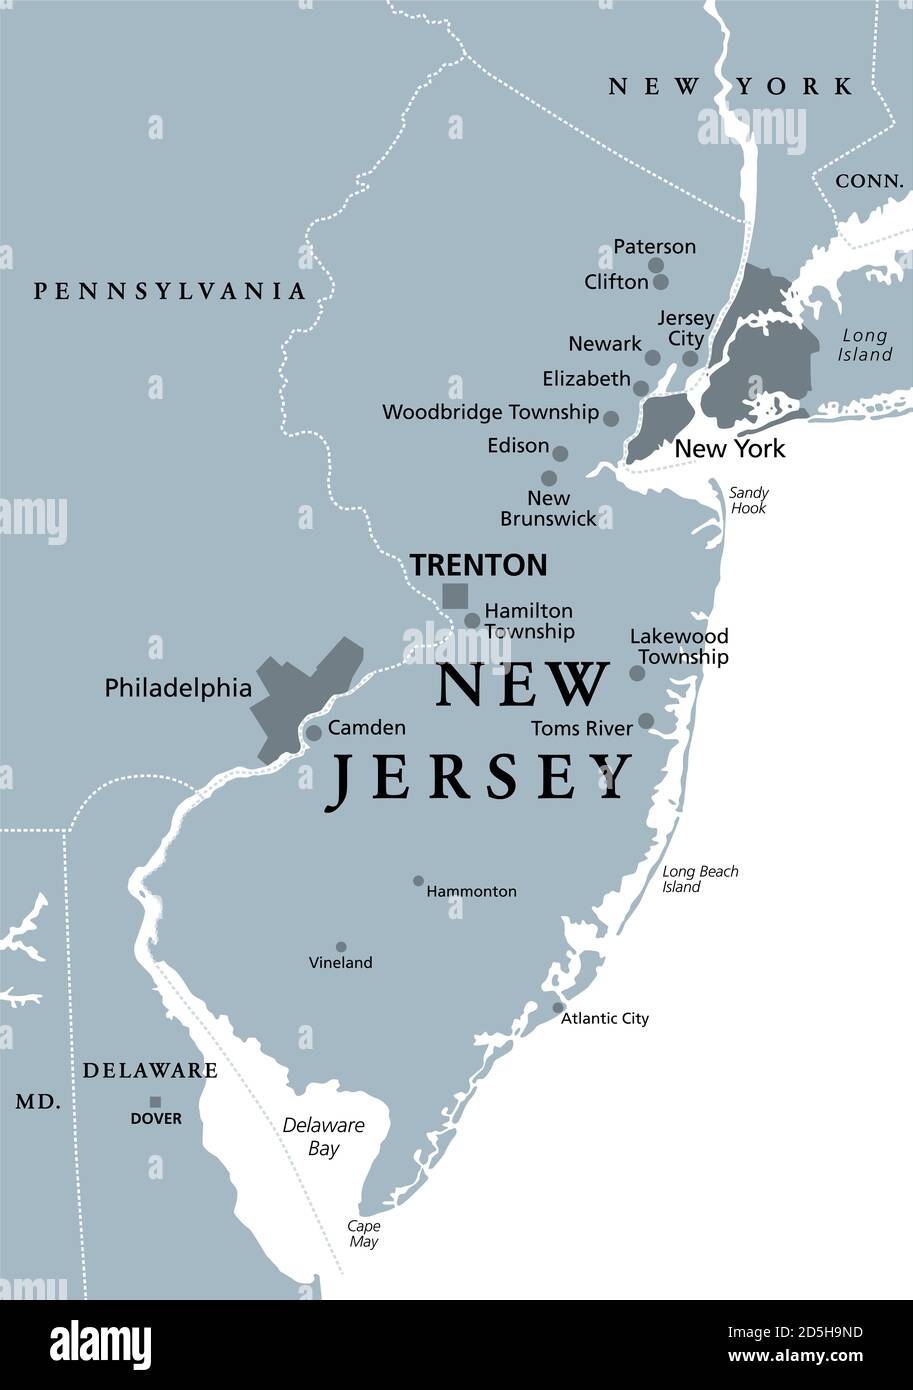 New Jersey, NJ, graue politische Landkarte mit der Hauptstadt Trenton. Staat in der Region des Mittelatlantiks im Nordosten der Vereinigten Staaten von Amerika. Stockfoto